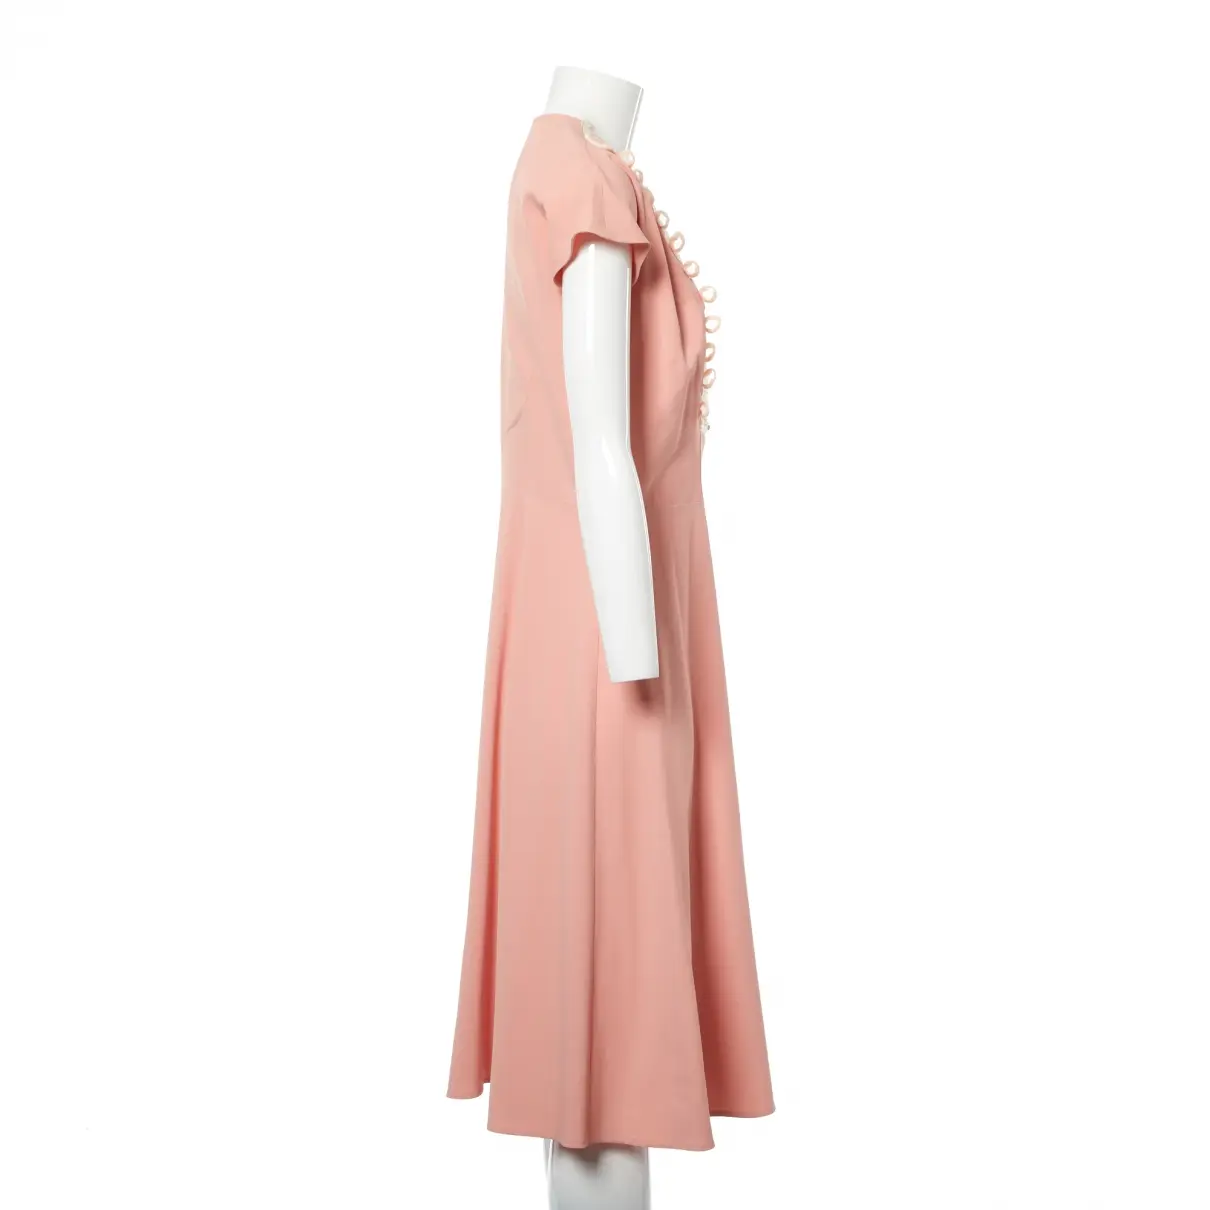 Ermanno Scervino Mid-length dress for sale